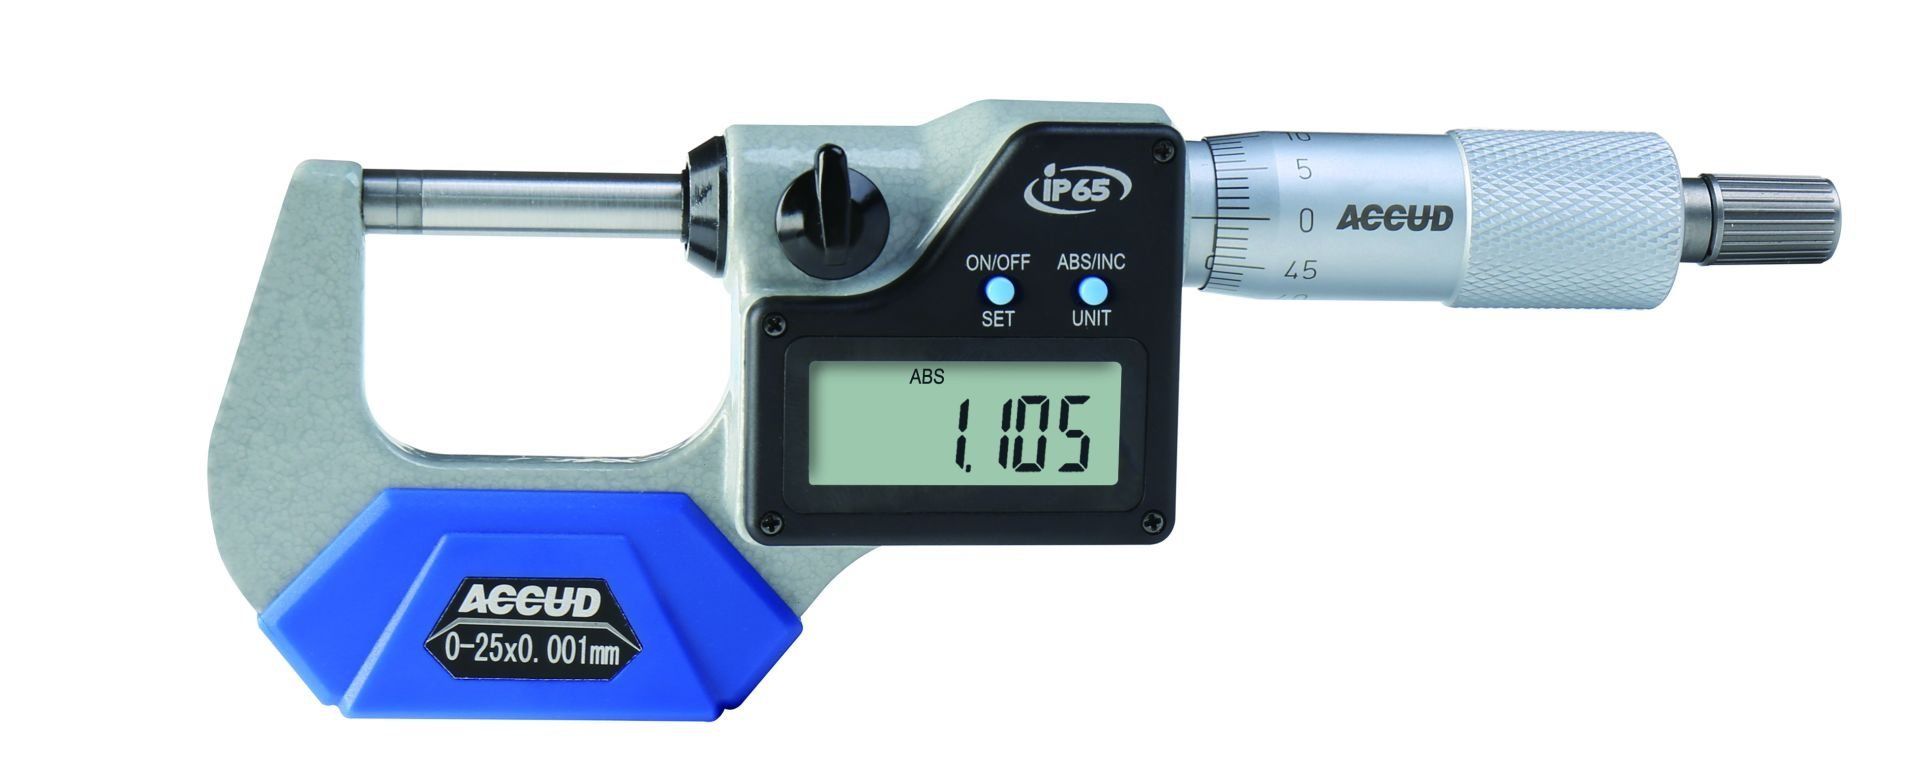 Accud IP65 Dijital Dış Çap Mikrometresi 313 Serisi 100-125 mm